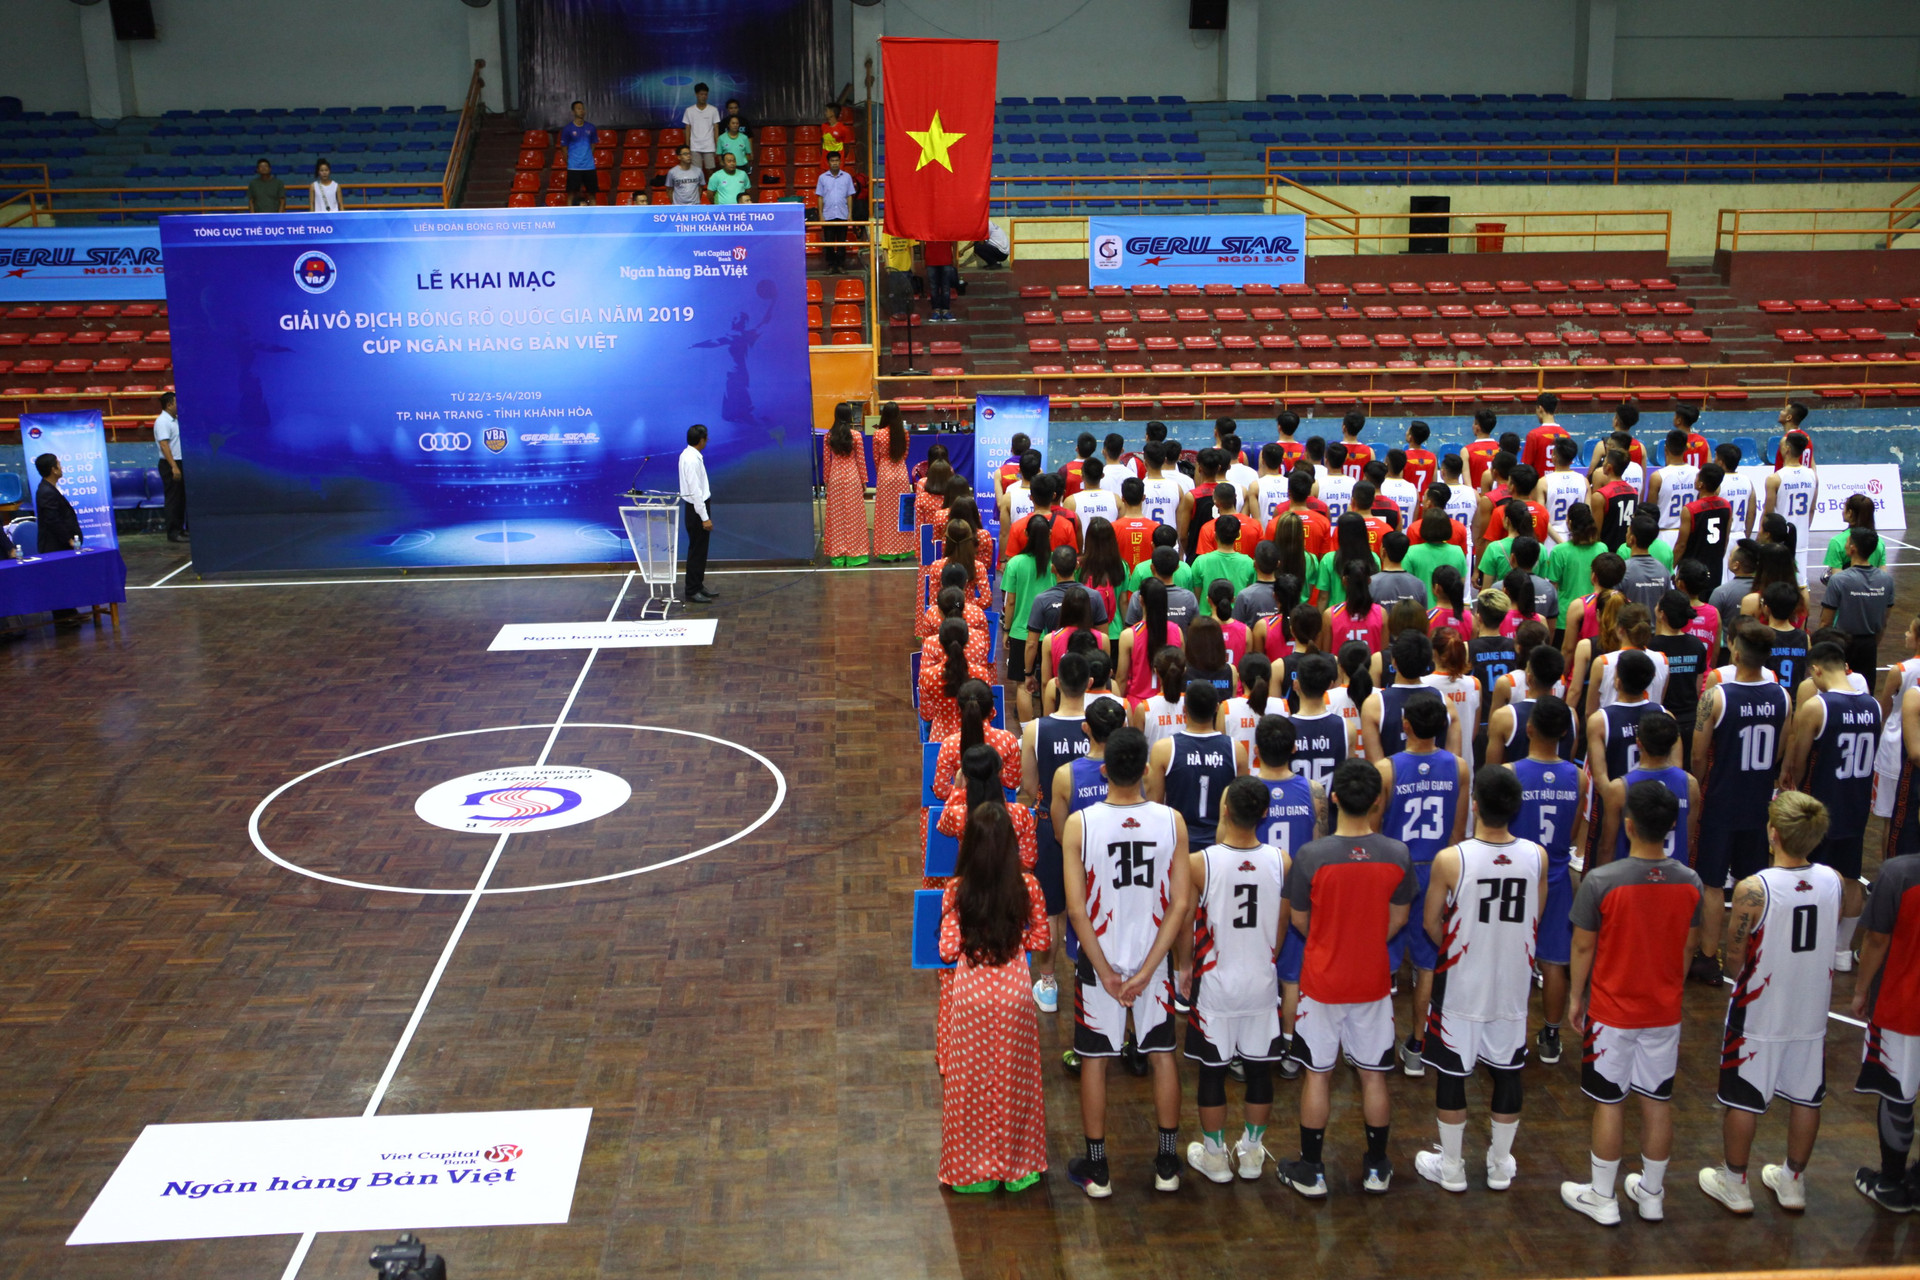 Ngân hàng Bản Việt đồng hành cùng Giải vô địch Bóng rổ quốc gia năm 2019 - Cup Ngân hàng Bản Việt 